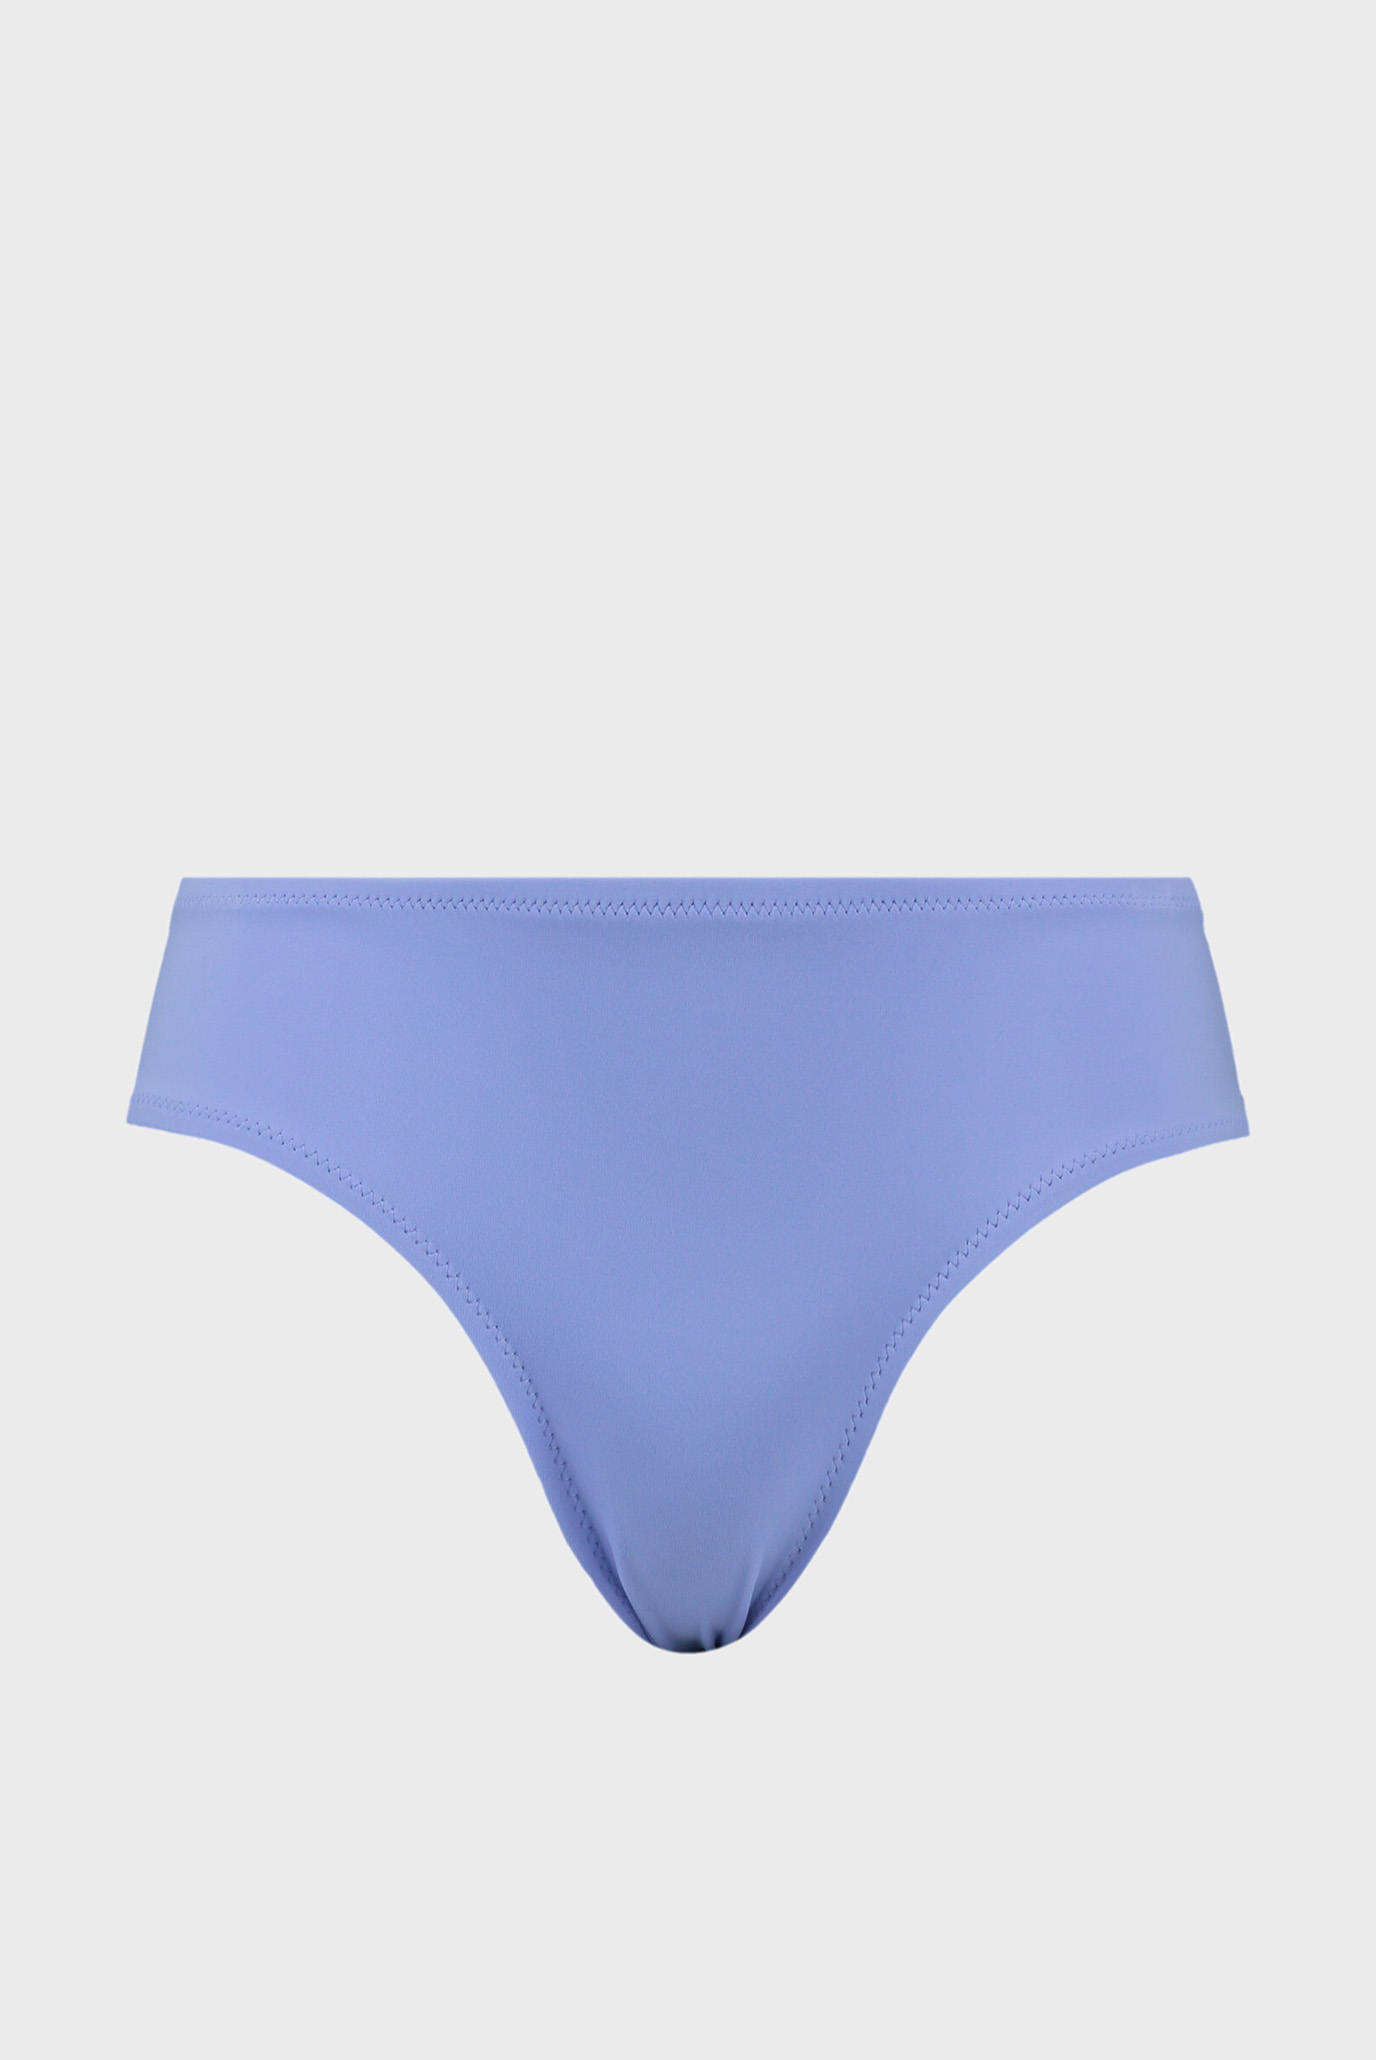 Жіночі сині трусики від купальника Swim Women’s Hipster Bottom 1